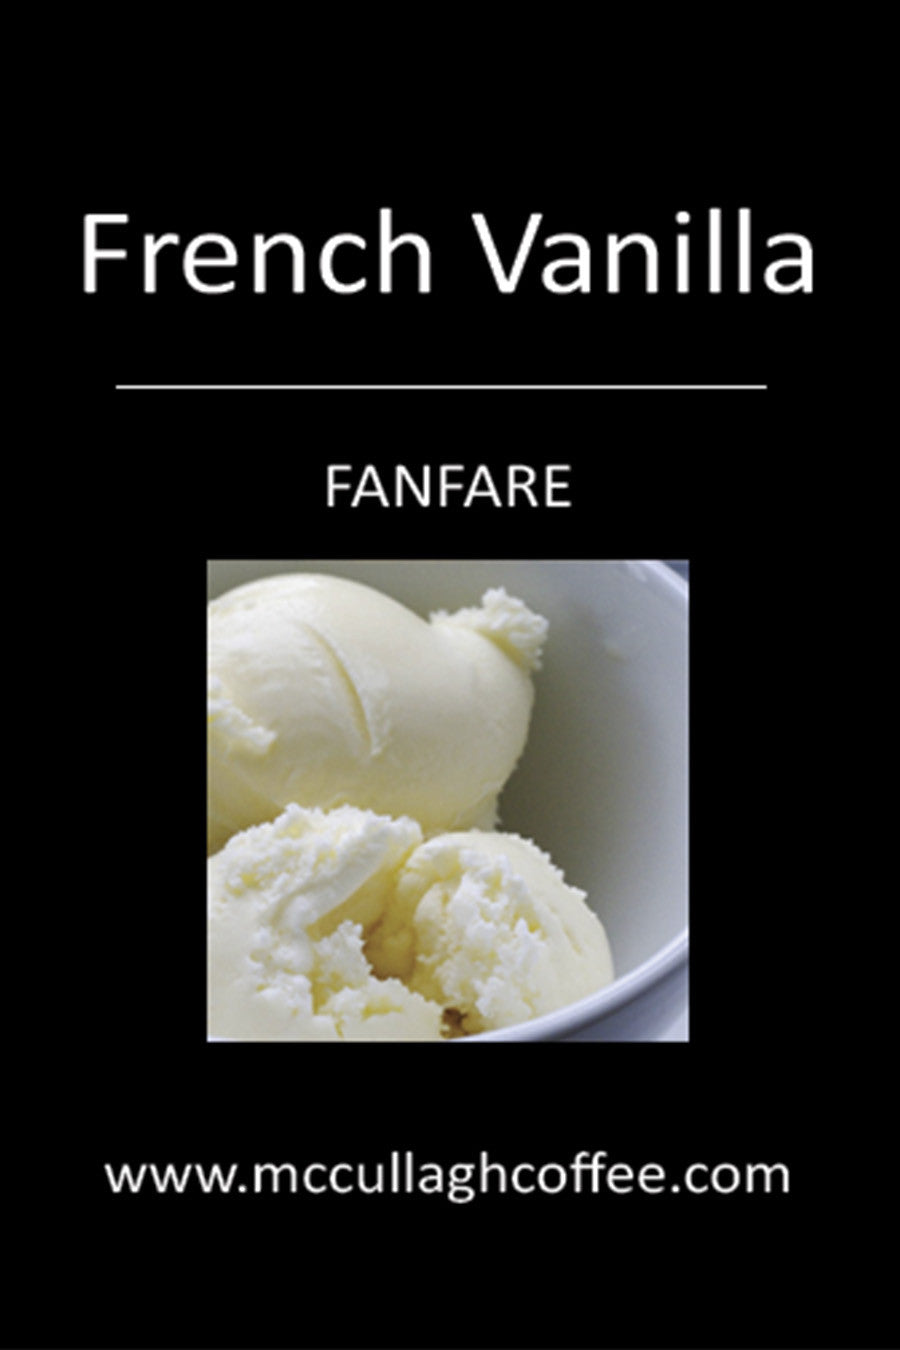 French Vanilla Decaf Coffee